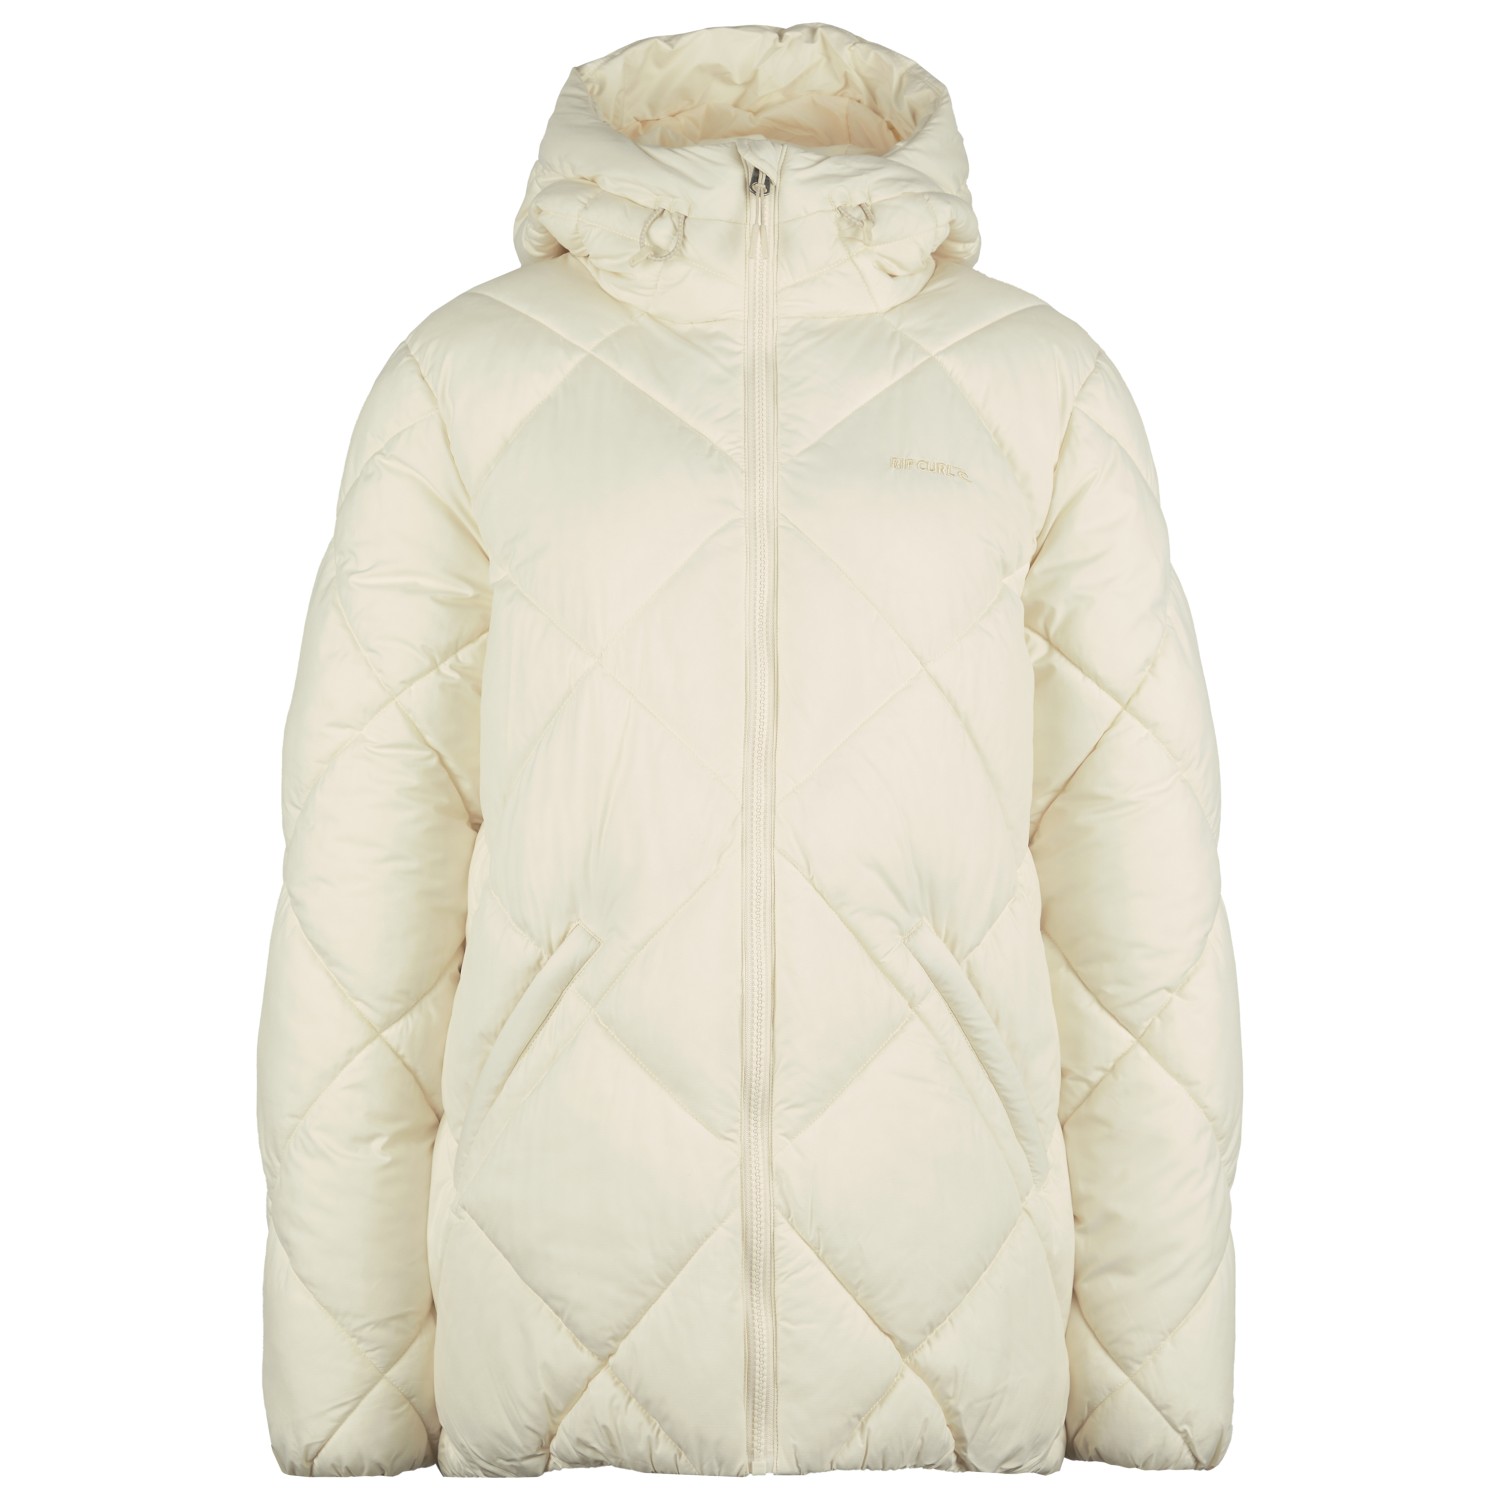 куртка rip curl north shore jacket цвет58 olive размер s Куртка из синтетического волокна Rip Curl Women's Anti Series Shorebreak, цвет Off White